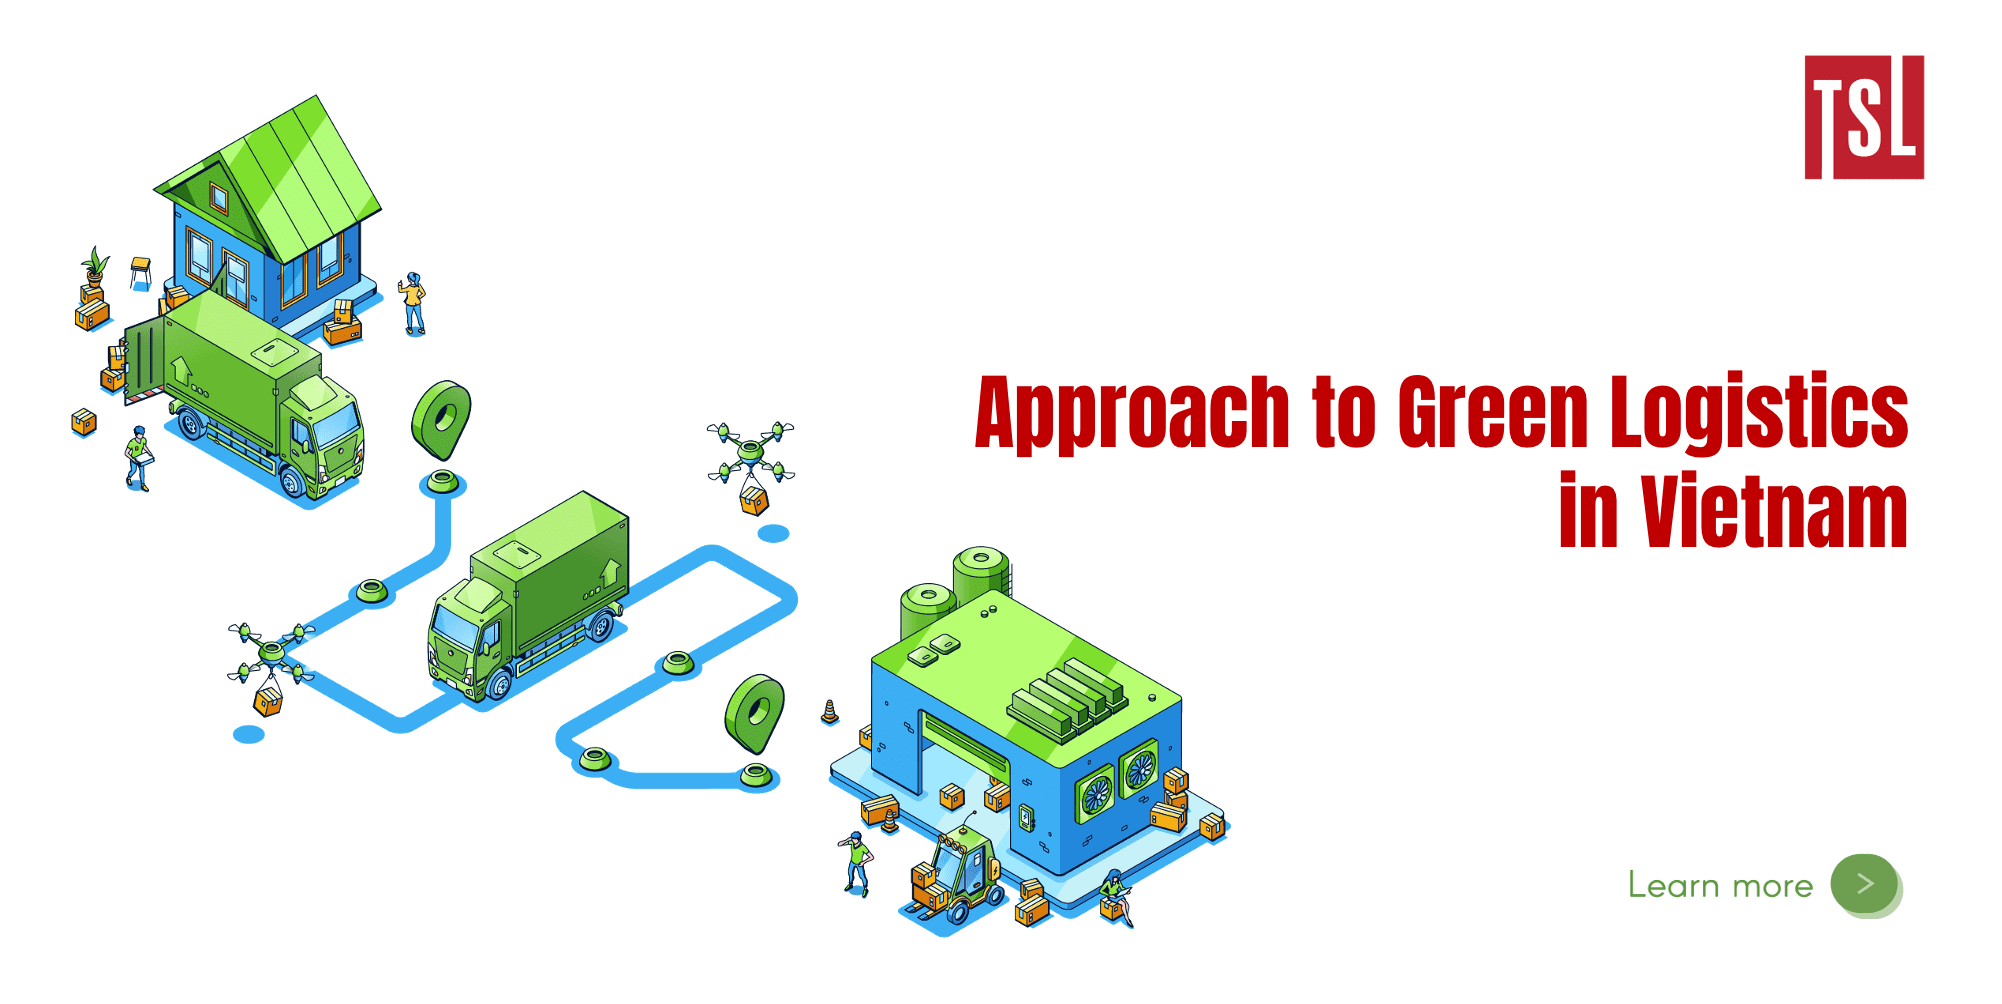 Cách tiếp cận hoạt động logistics xanh ở Việt Nam